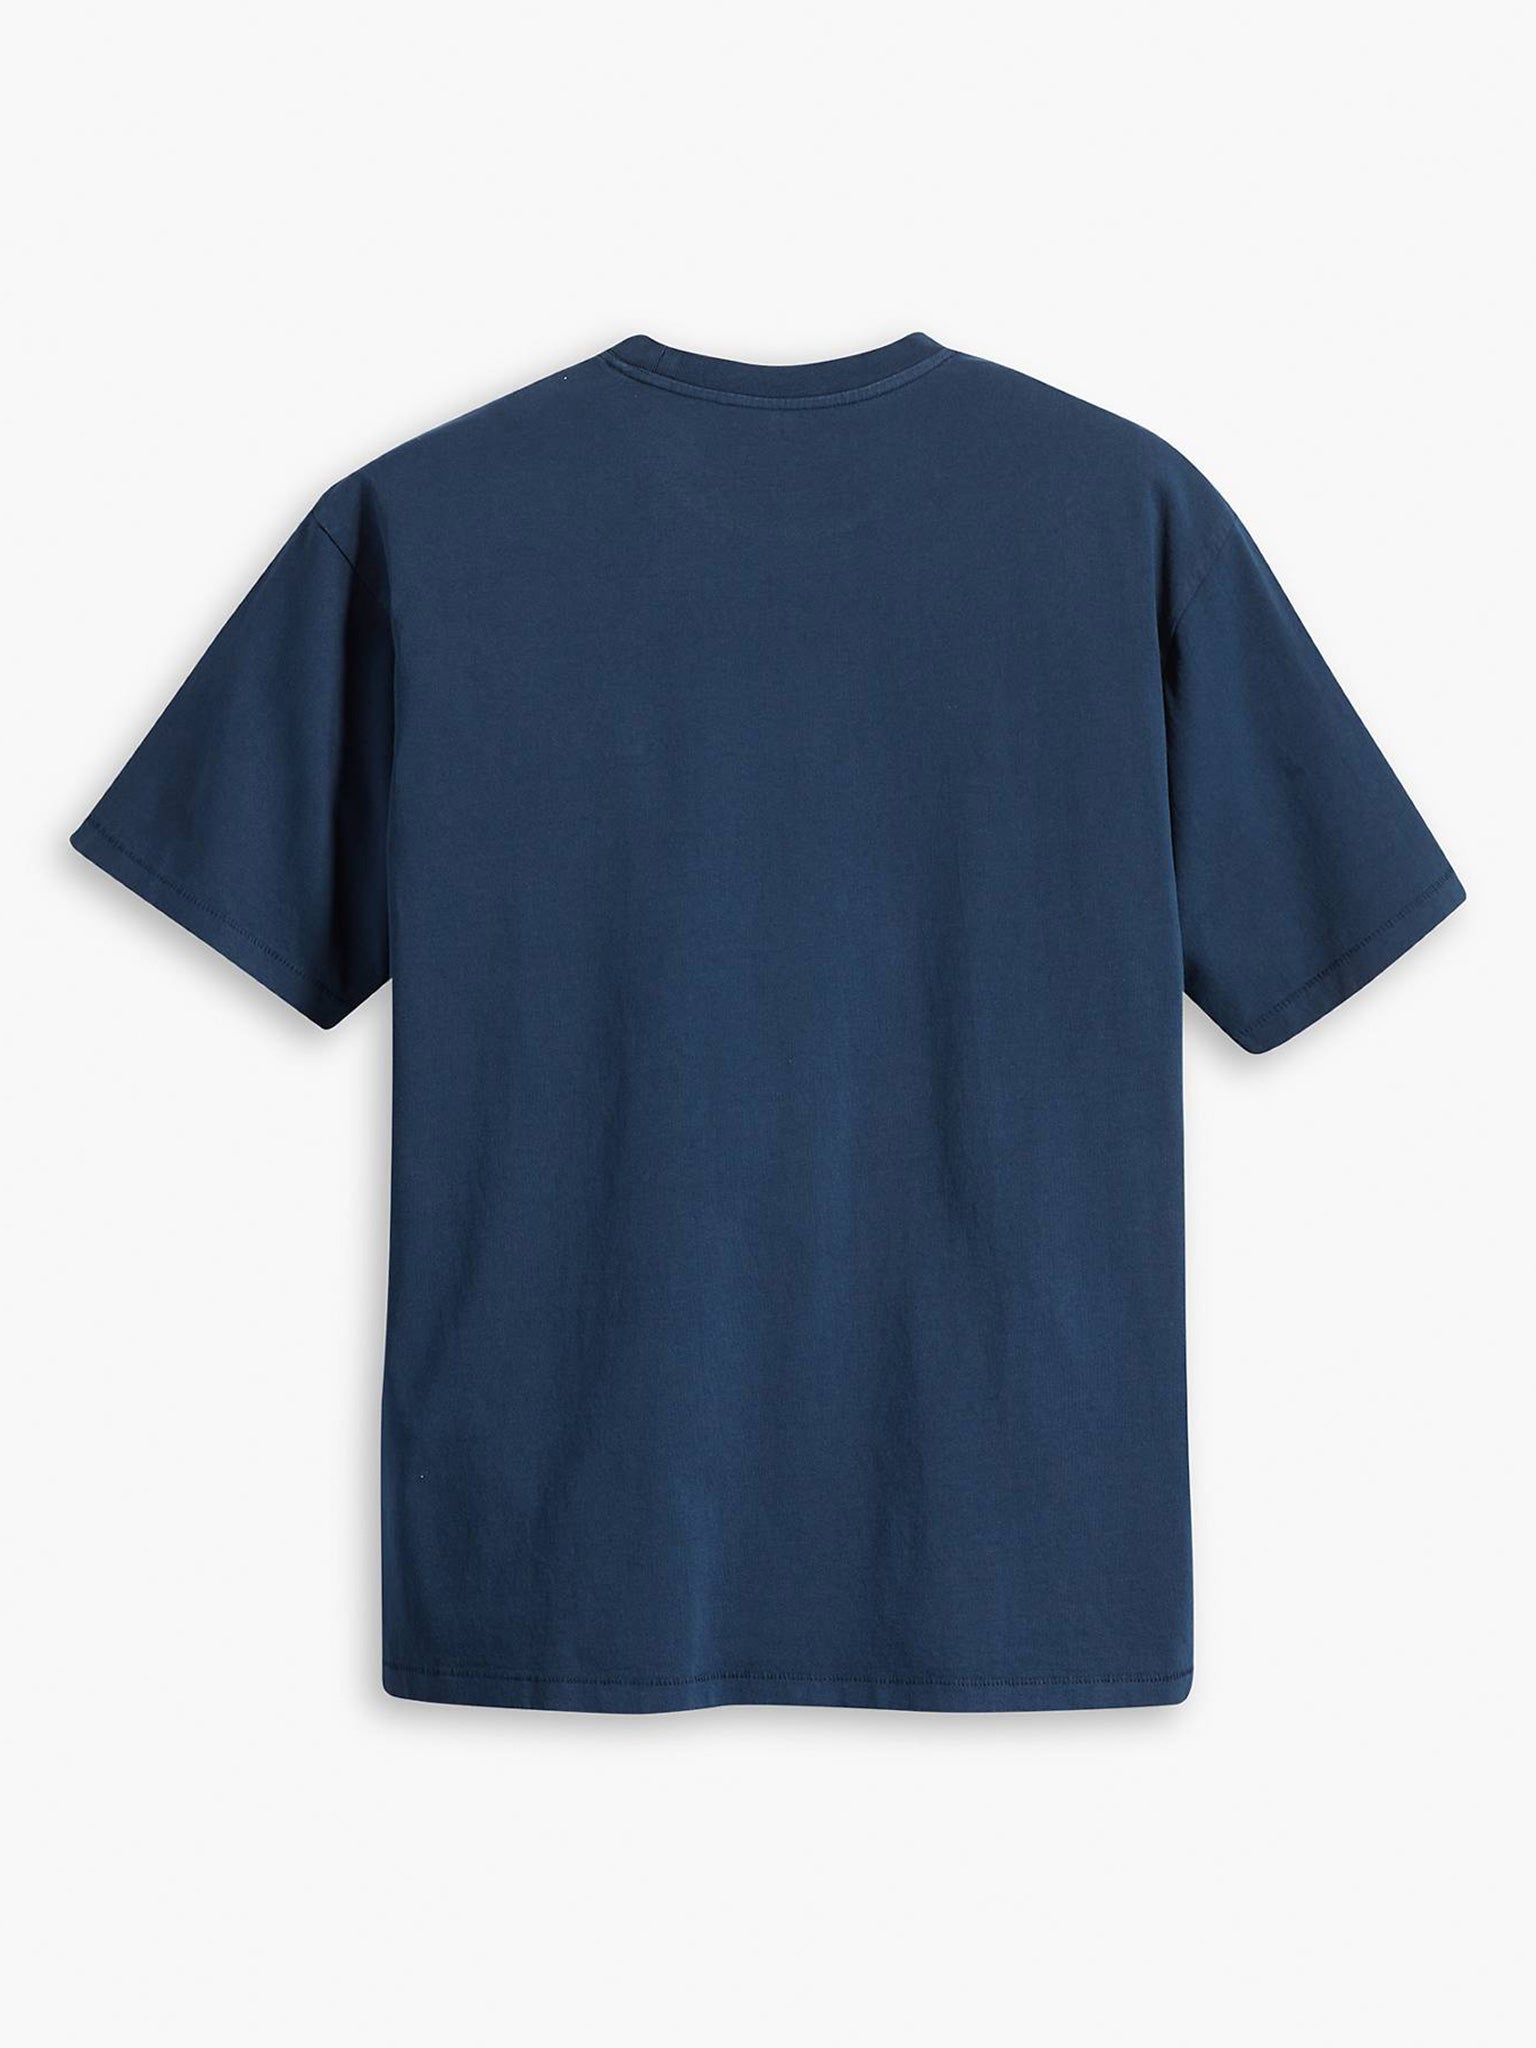 Ανδρικό t-shirt vintage tee blues A06370058 | A06370058